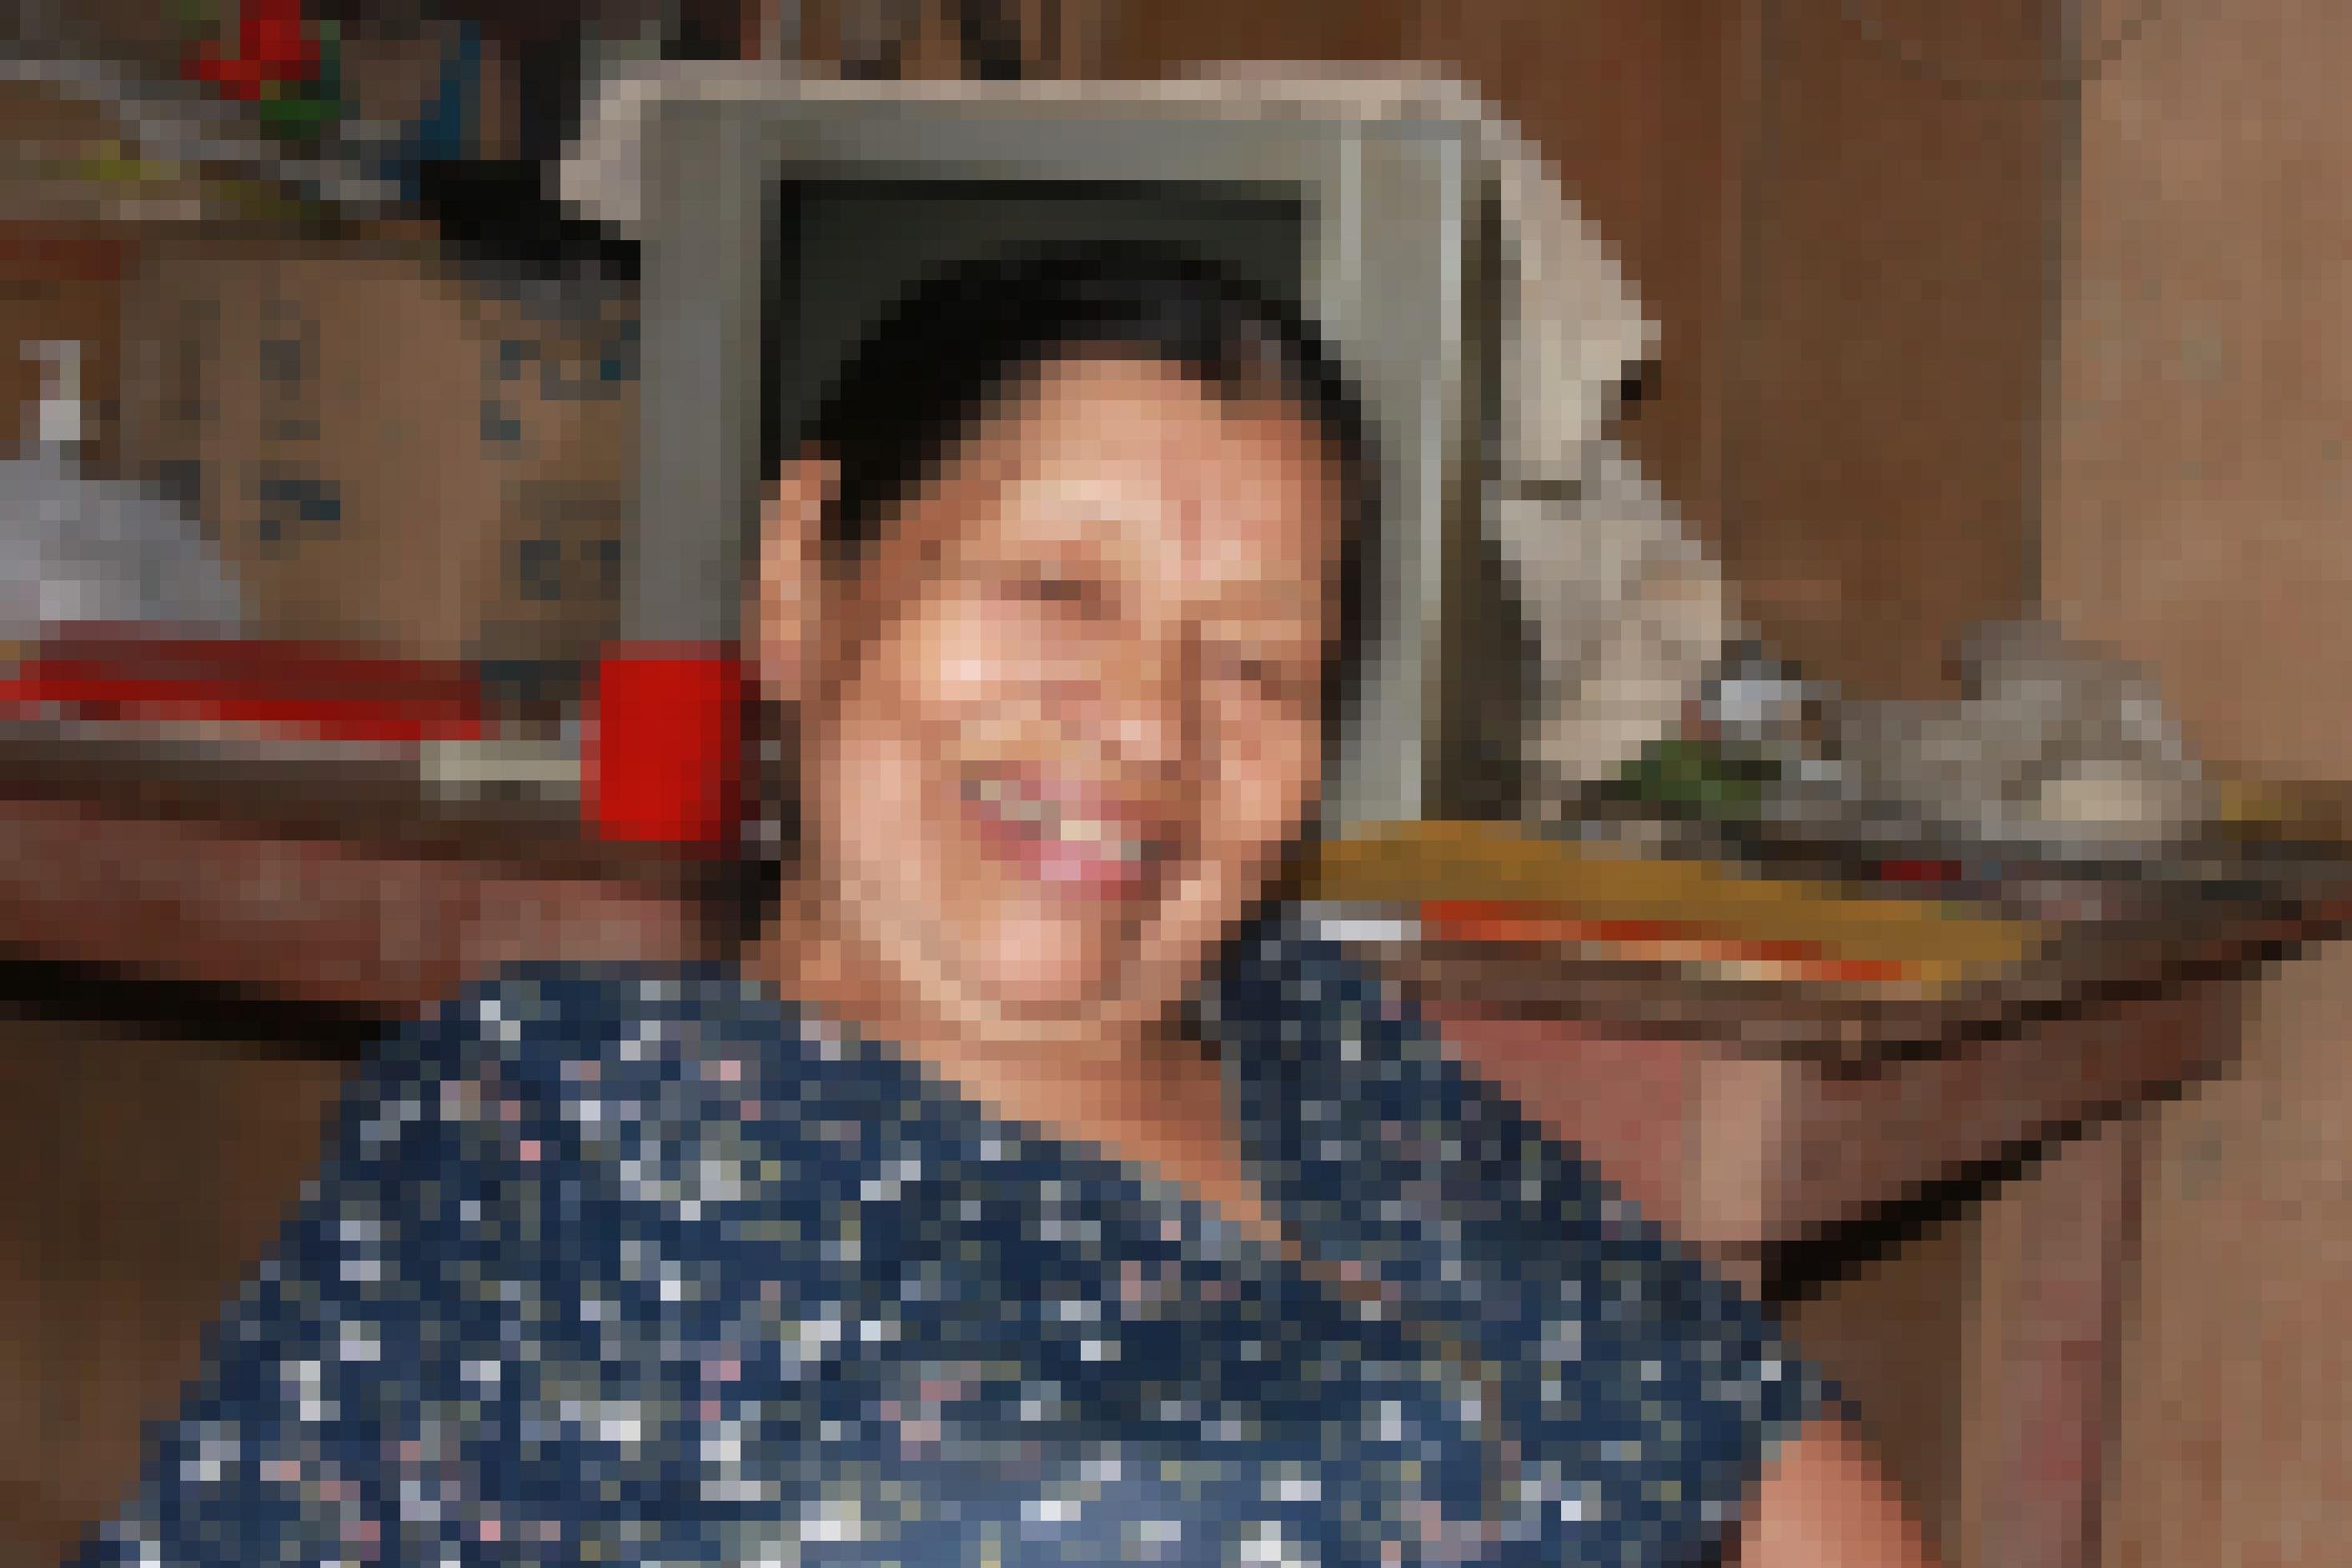 Brustbild von Frau mit runzligem Gesicht, schwarzen zurückgekämmten Haaren, lacht  in die Kamera, im Hintergurnd ein altes PC_Modell